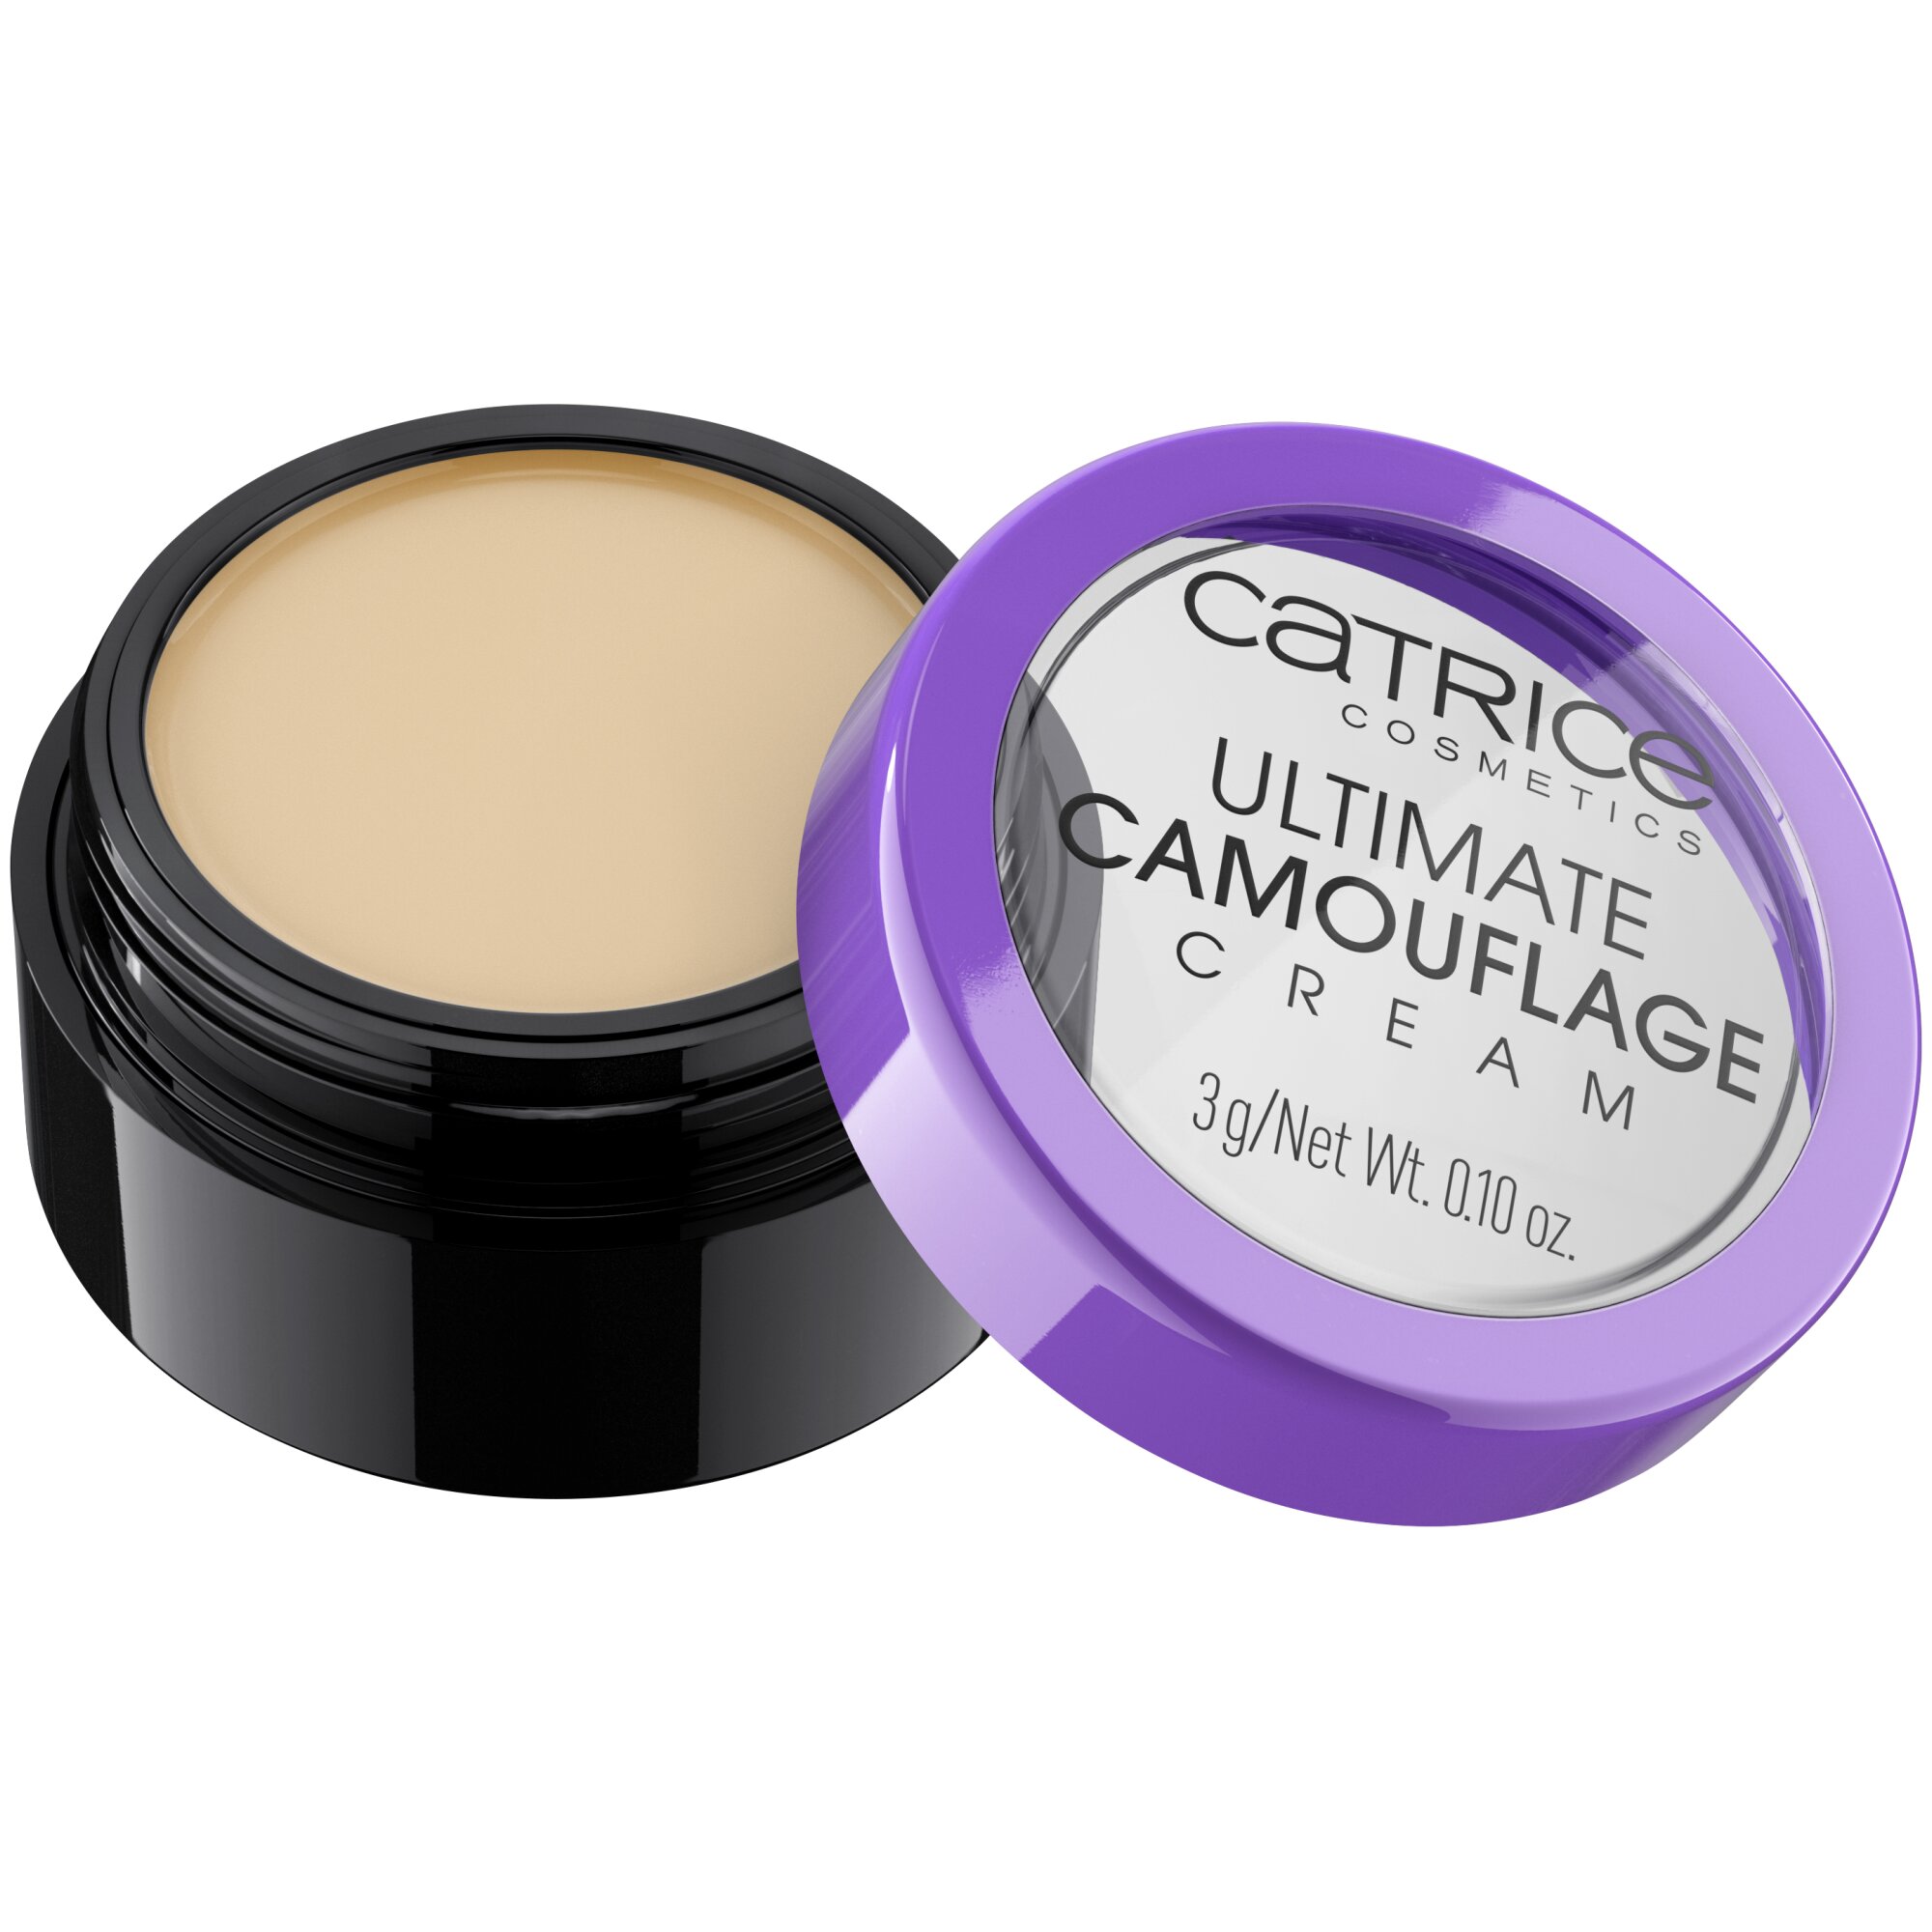 Crema corectoare Ultimate Camouflage Cream, 015 - W Fair, 3 g, Catrice